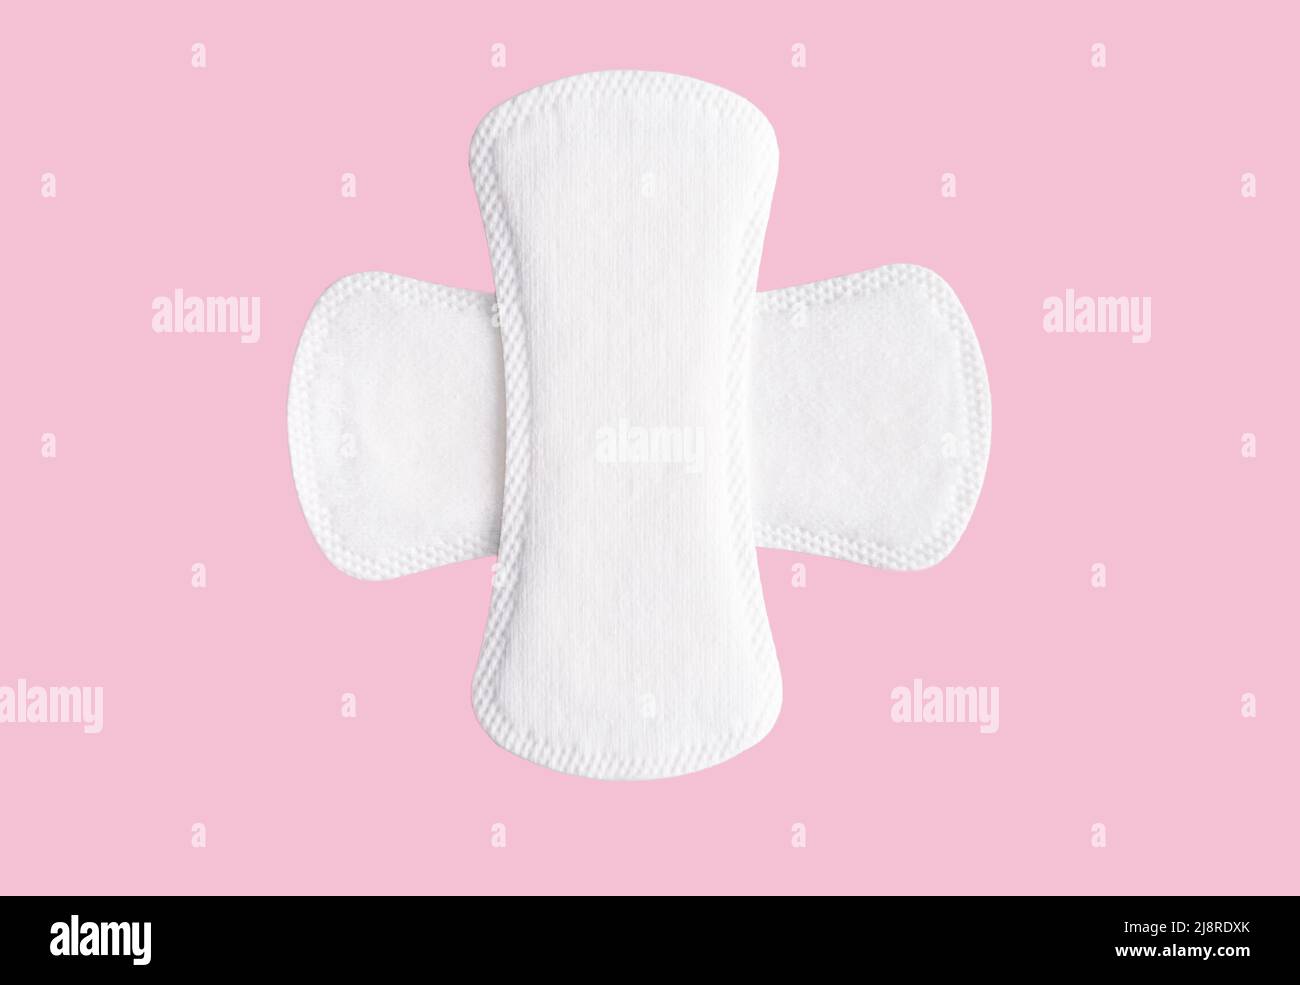 Feminines Hygienepad auf rosa Hintergrund. Konzept der weiblichen Hygiene während der Menstruation. Draufsicht Stockfoto